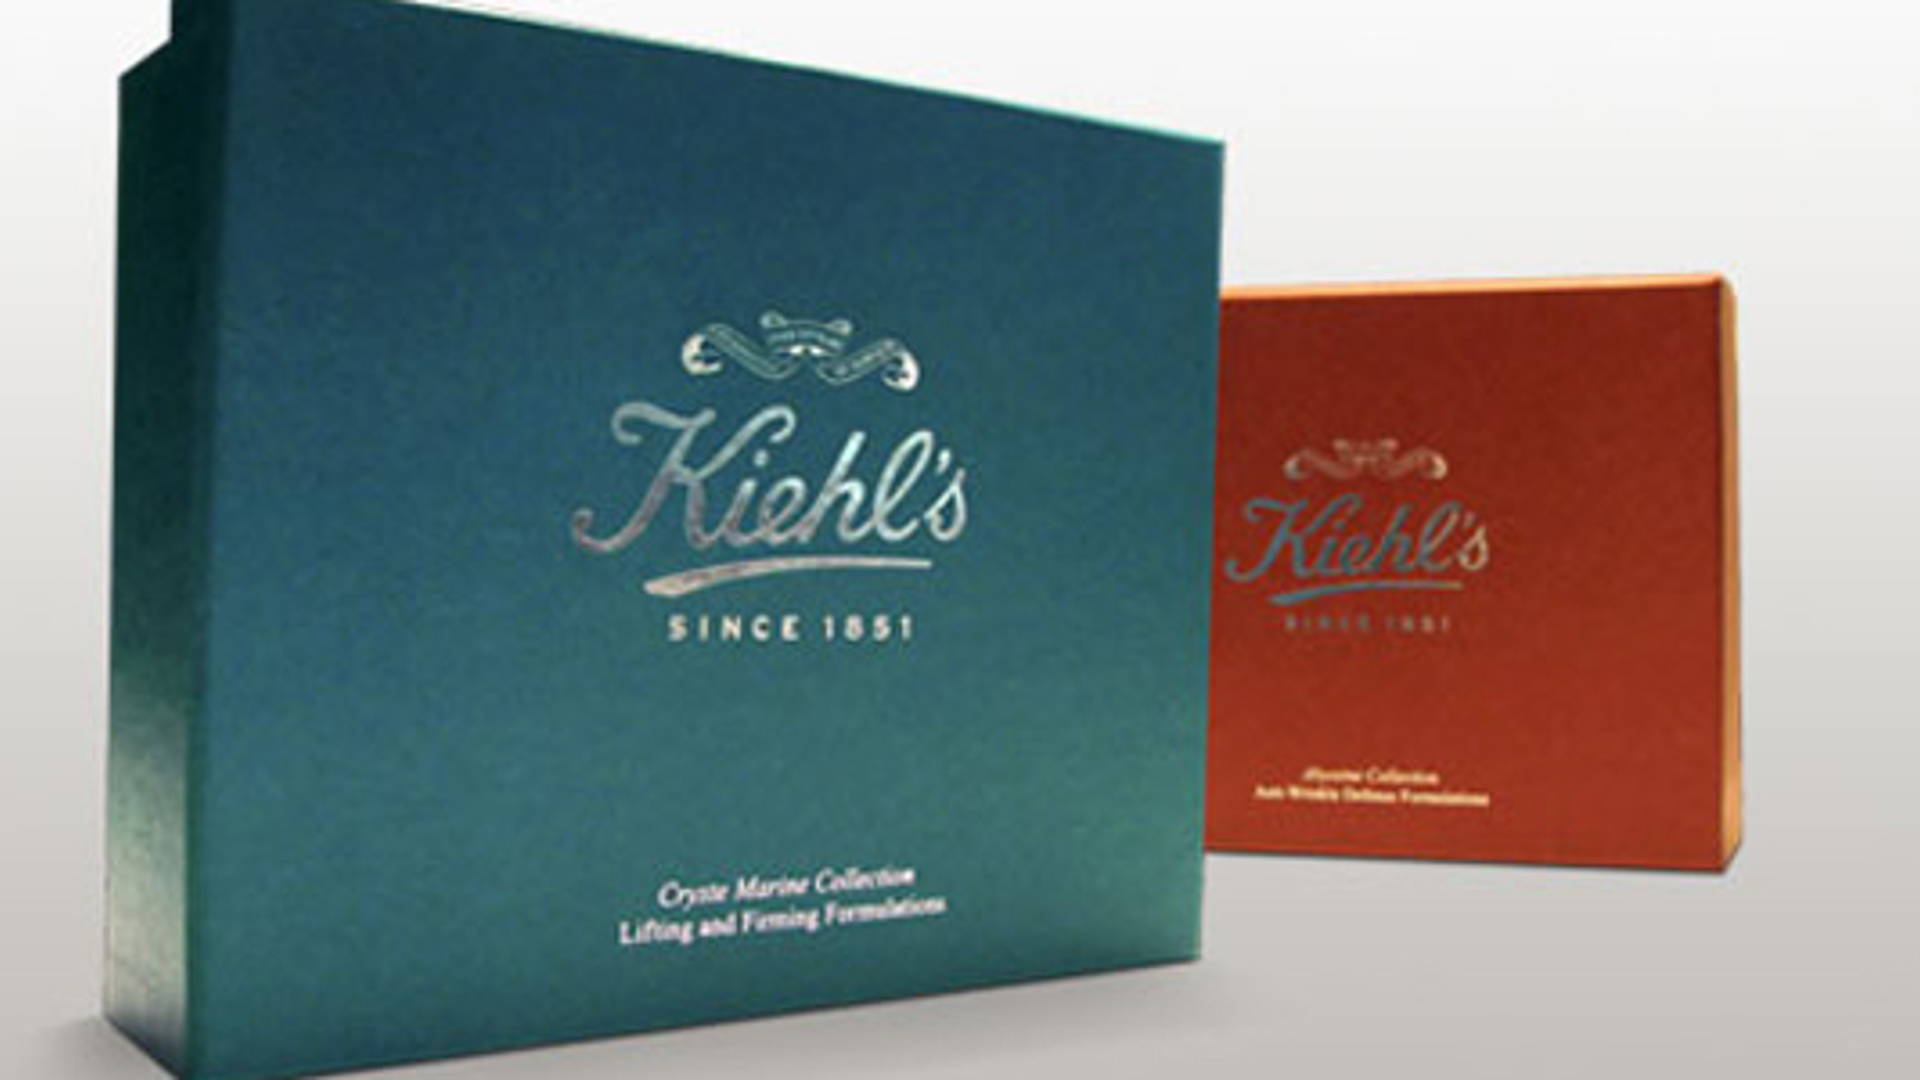 Kiehl's Gift Set Package | Dieline - Design, Branding & Packaging